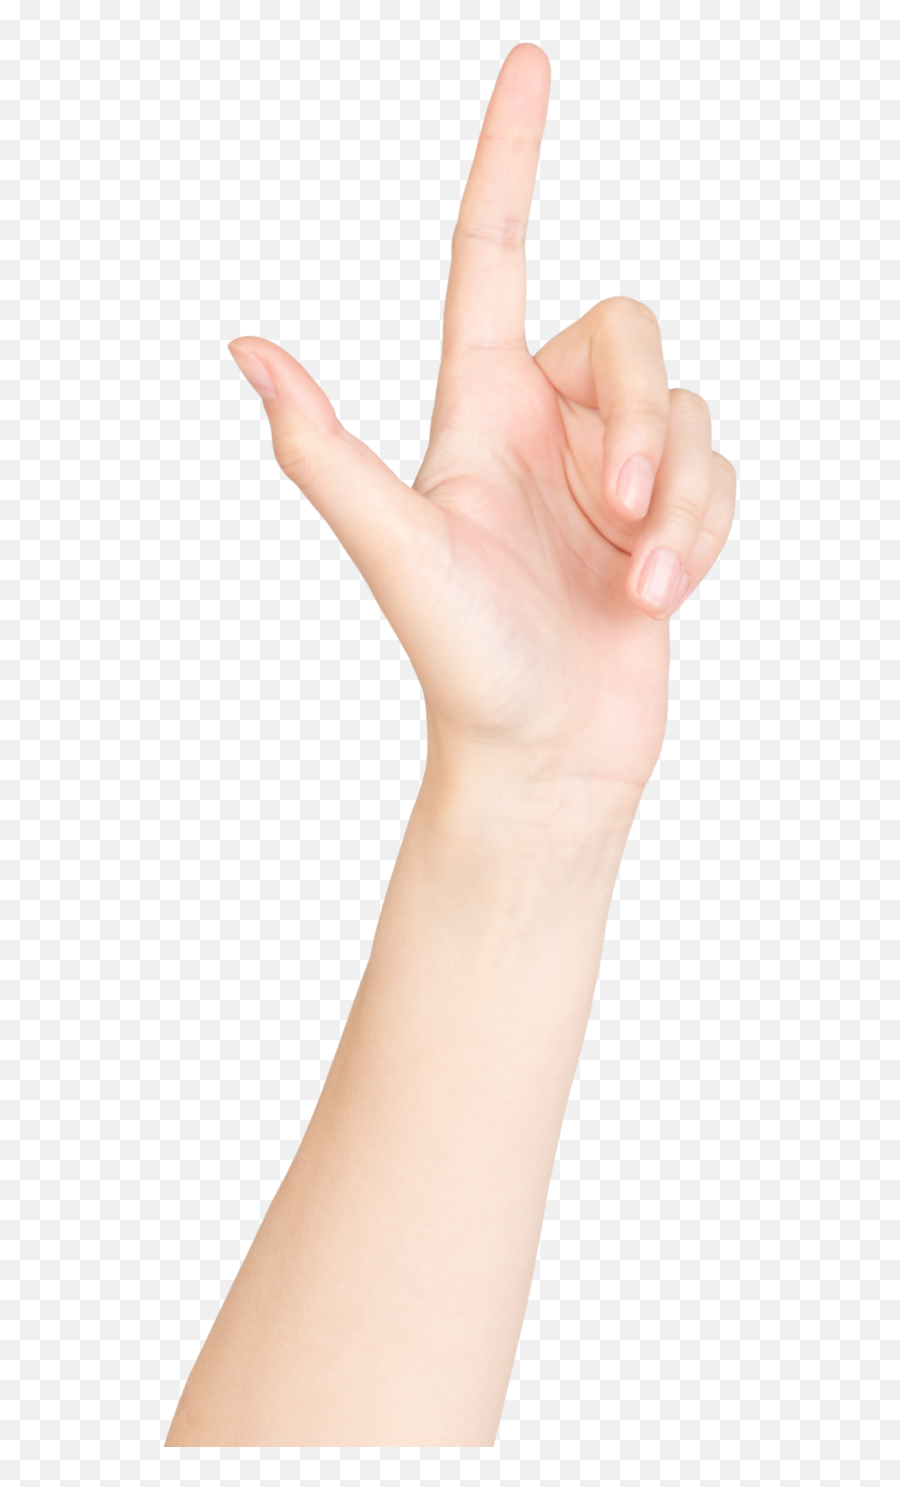 Fotos De Stock Gratis U2013 Hermosas Imágenes De Personas Y - Sign Language Emoji,Emoticon Mano Señalando